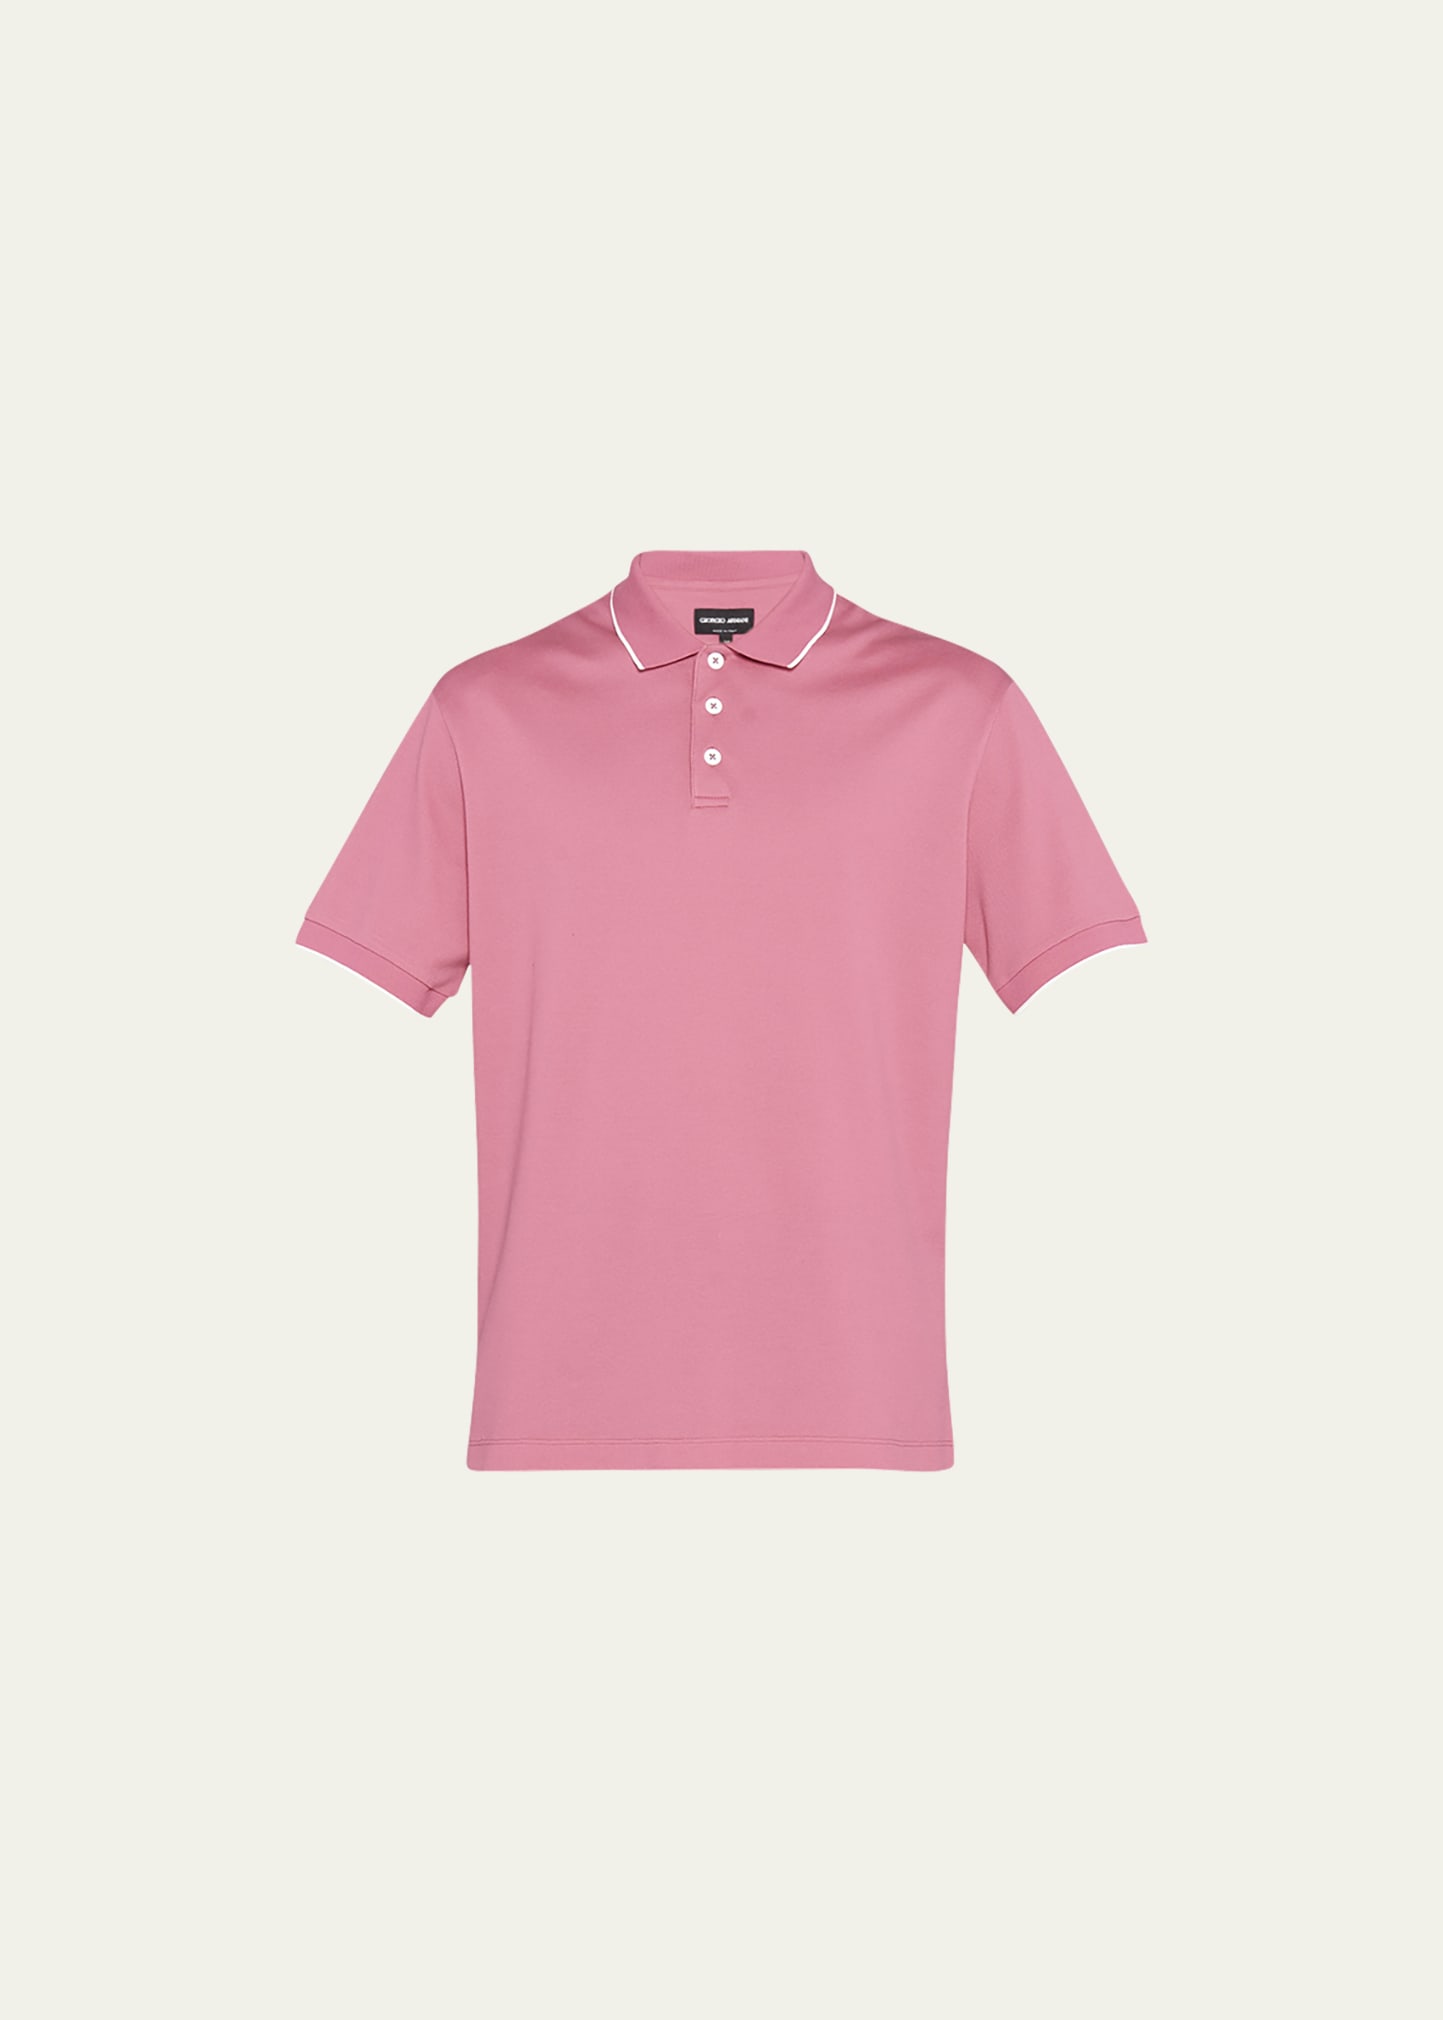 Armani Men's Pique Polo Shirt Bergdorf Goodman